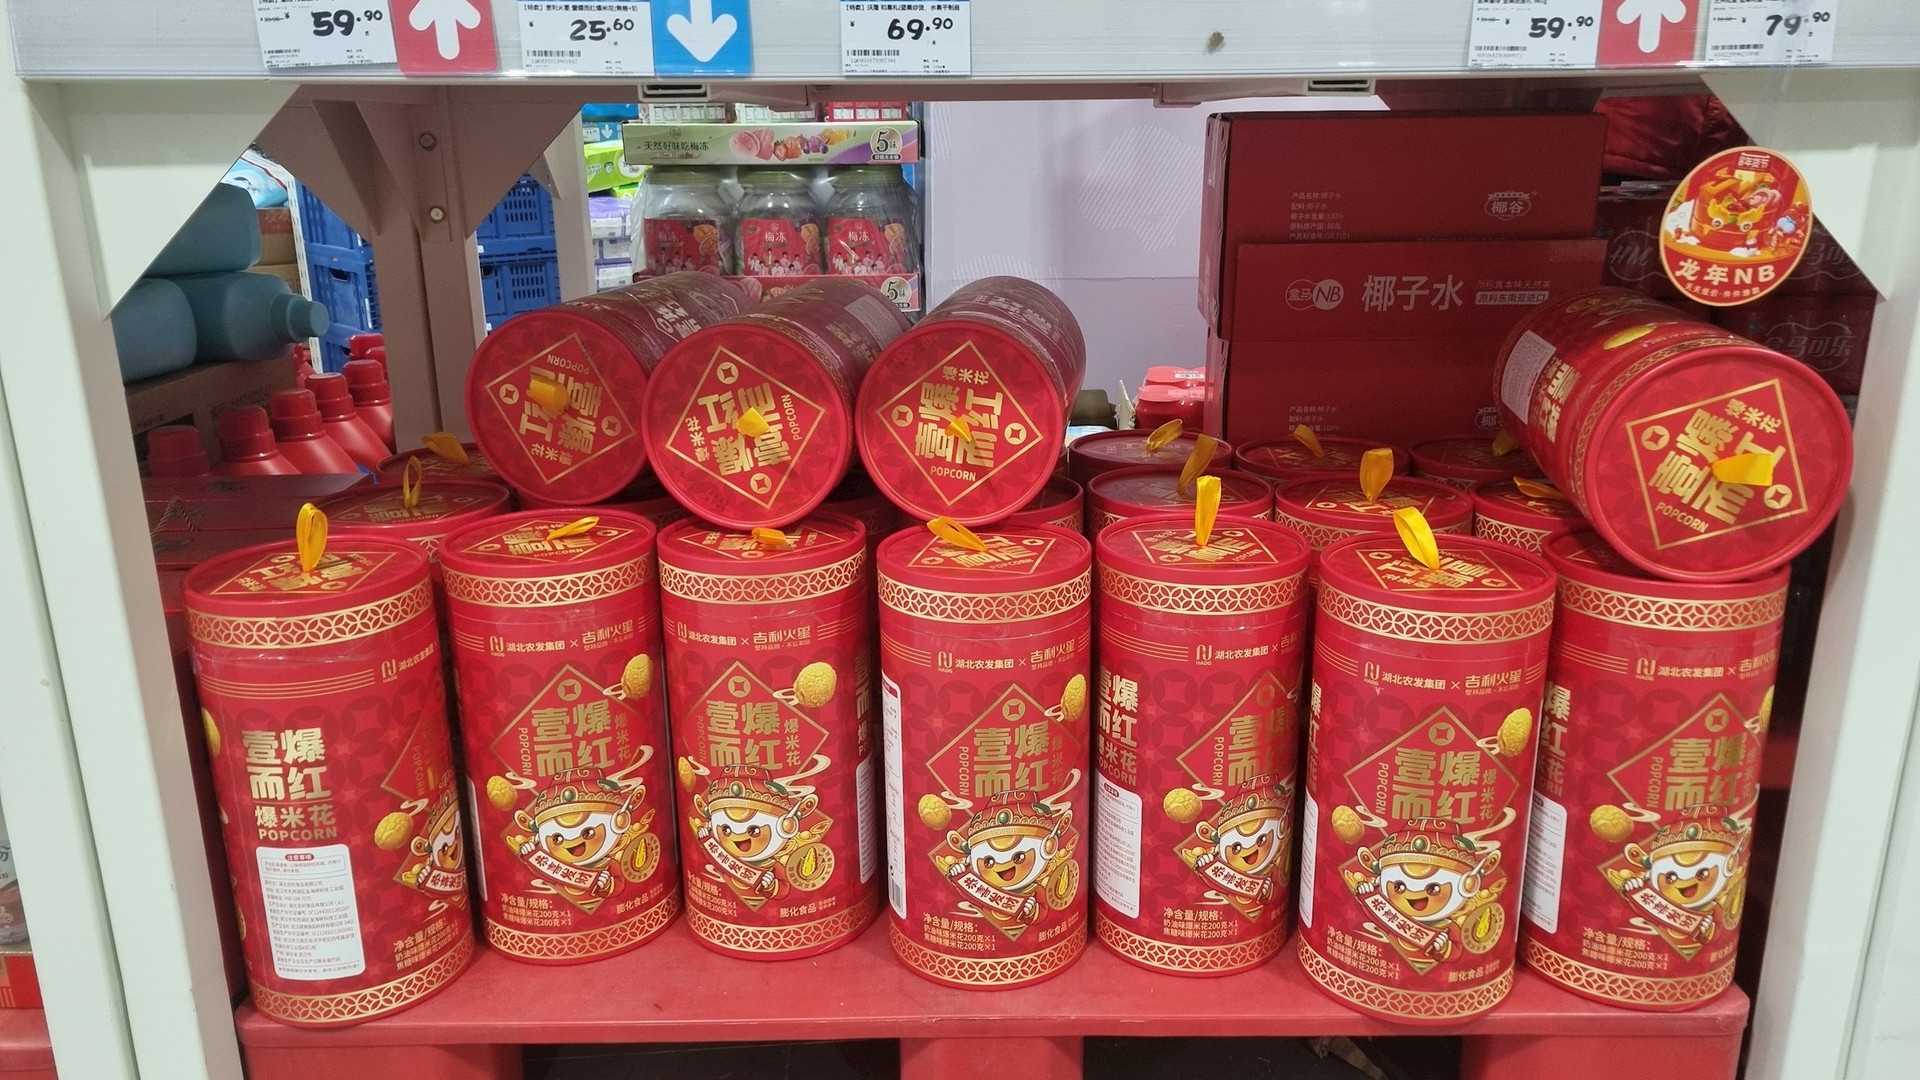 Du học sinh Việt trải nghiệm chợ Tết của người Trung Quốc: Bất ngờ với sản phẩm “cháy hàng” nhanh nhất, không phải hoa quả hay kẹo bánh mà là món rất quen thuộc với mọi nhà- Ảnh 1.